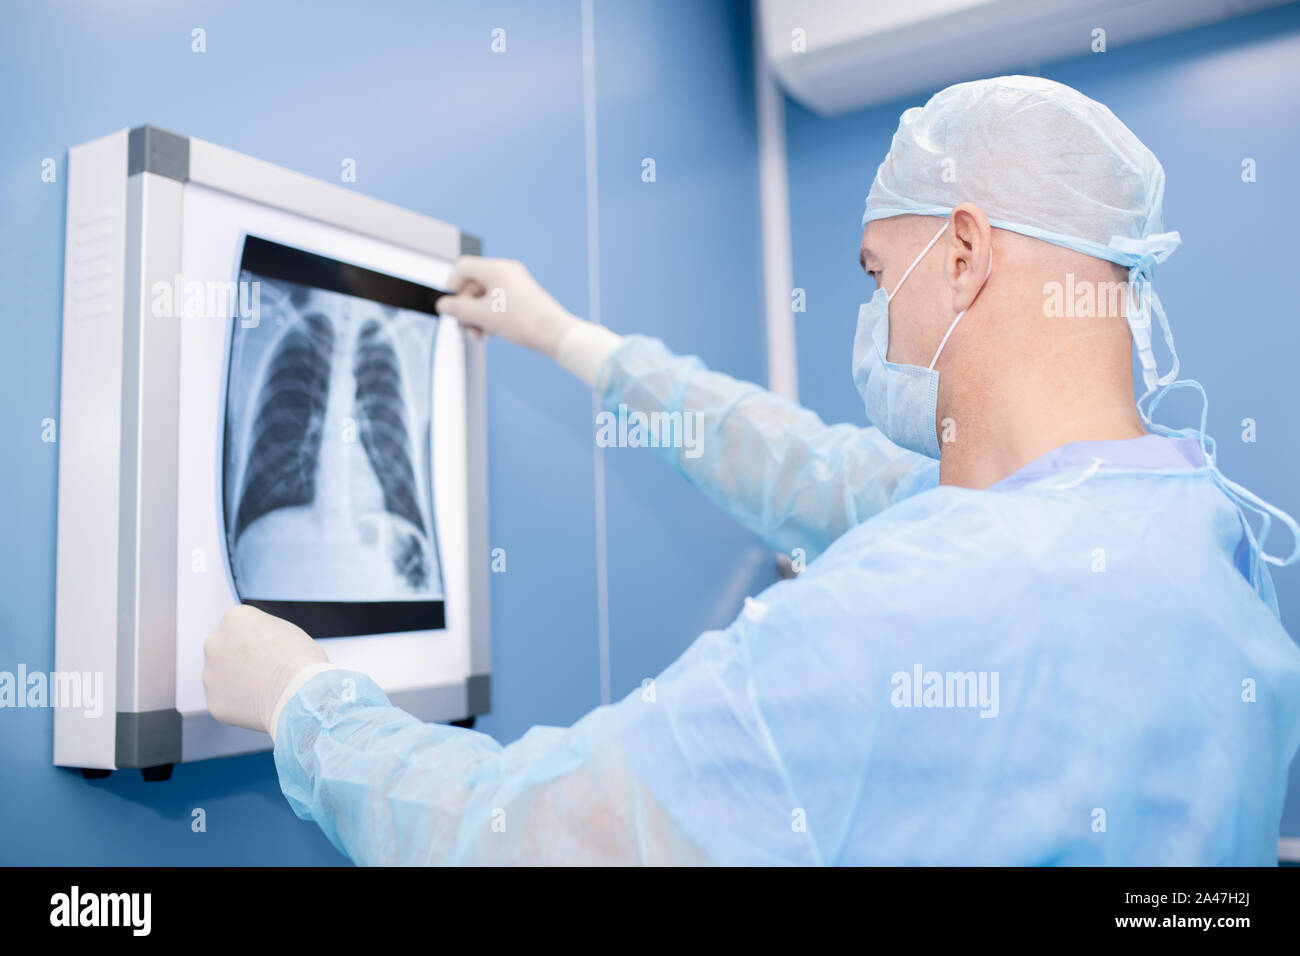 Professionista esperto in chirurgia uniforme e maschera guardando i polmoni x-ray Foto Stock